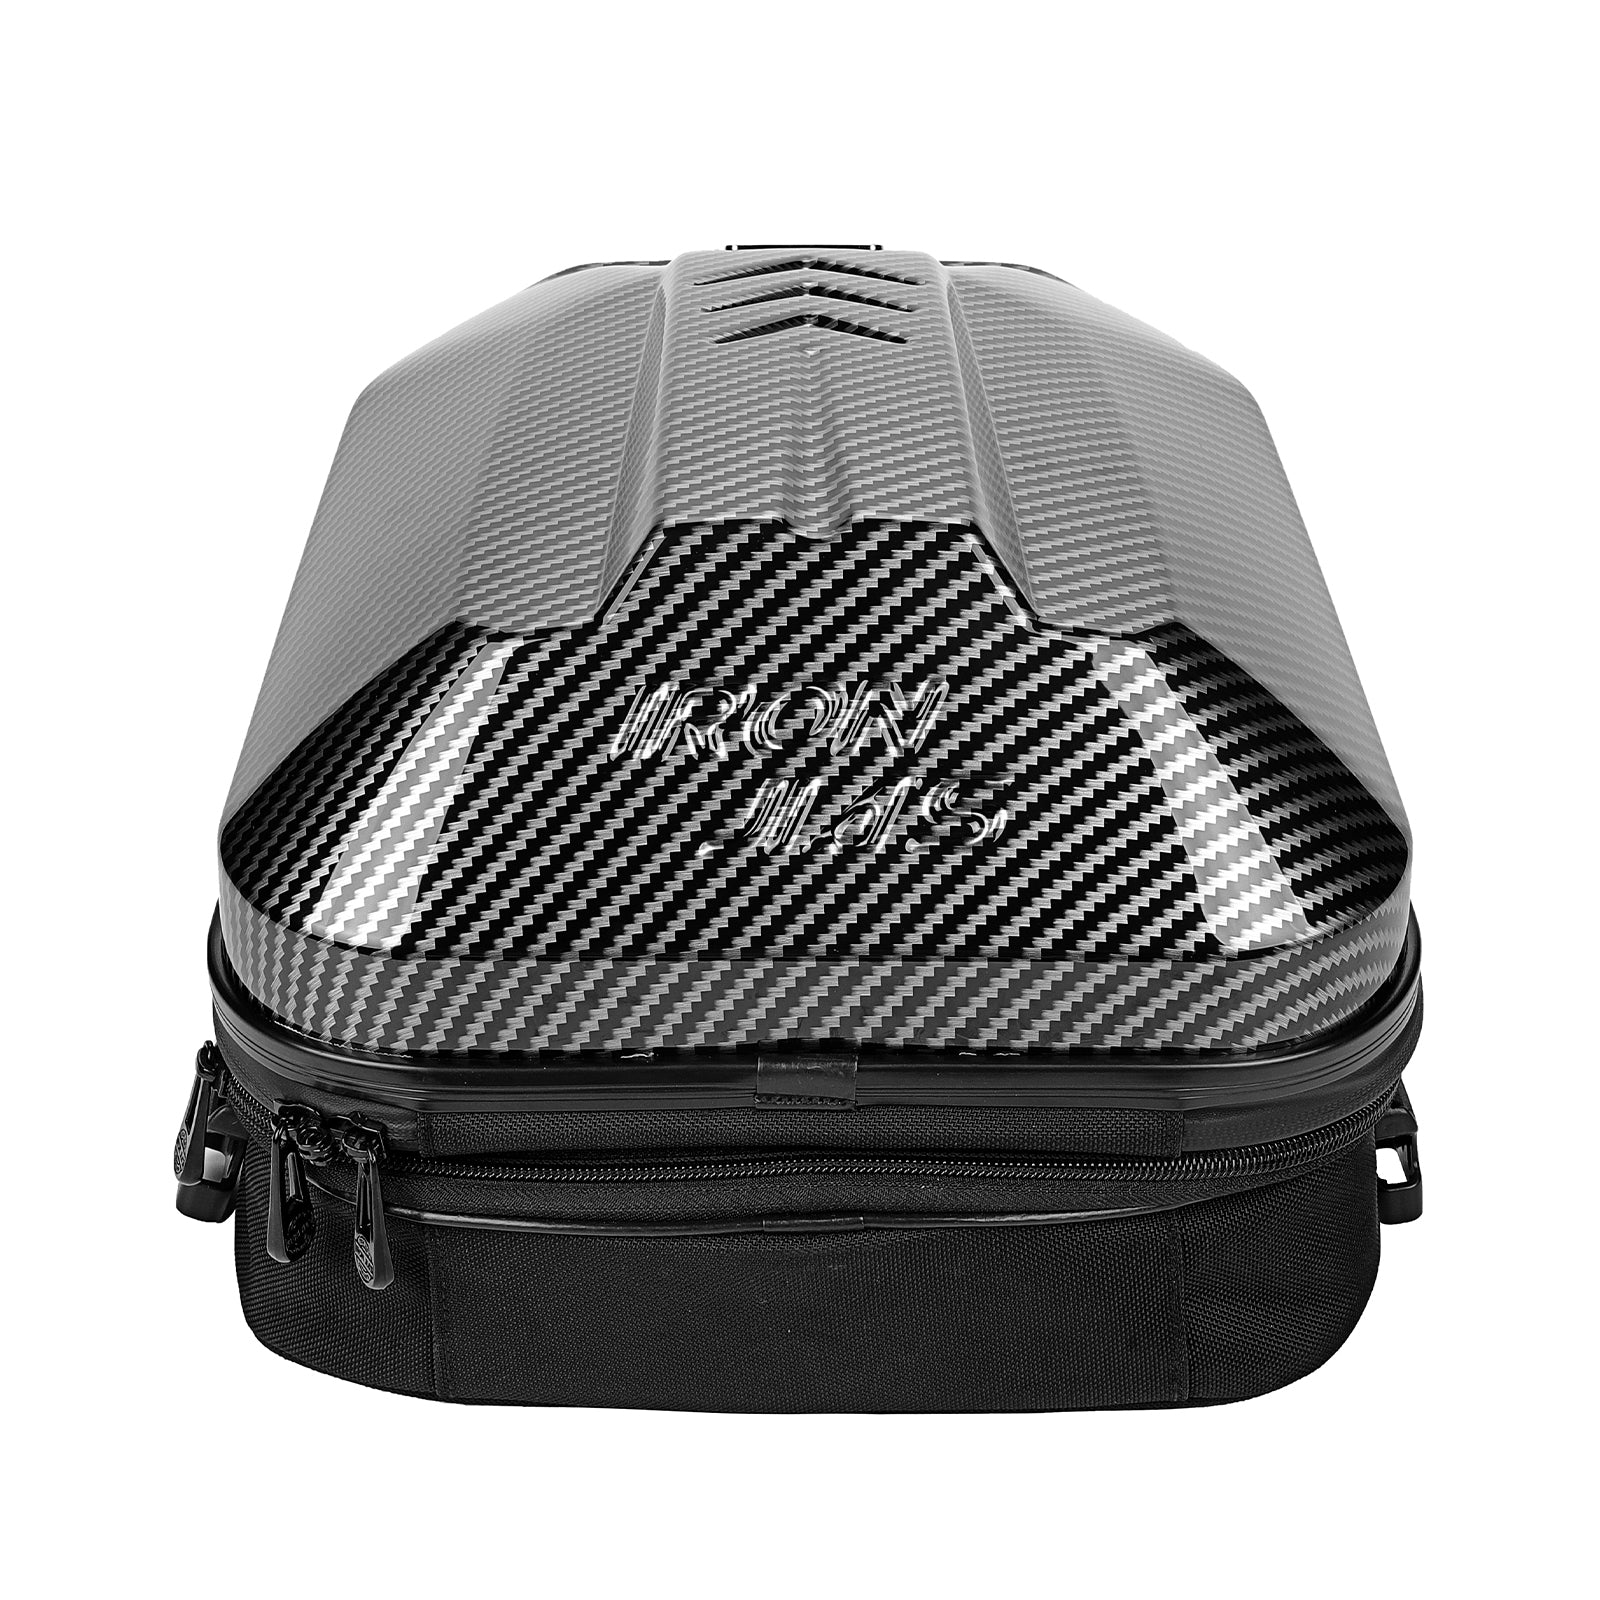 Best Motorcycle Bags - Ultimate Motorcycle Luggage | Field Mag